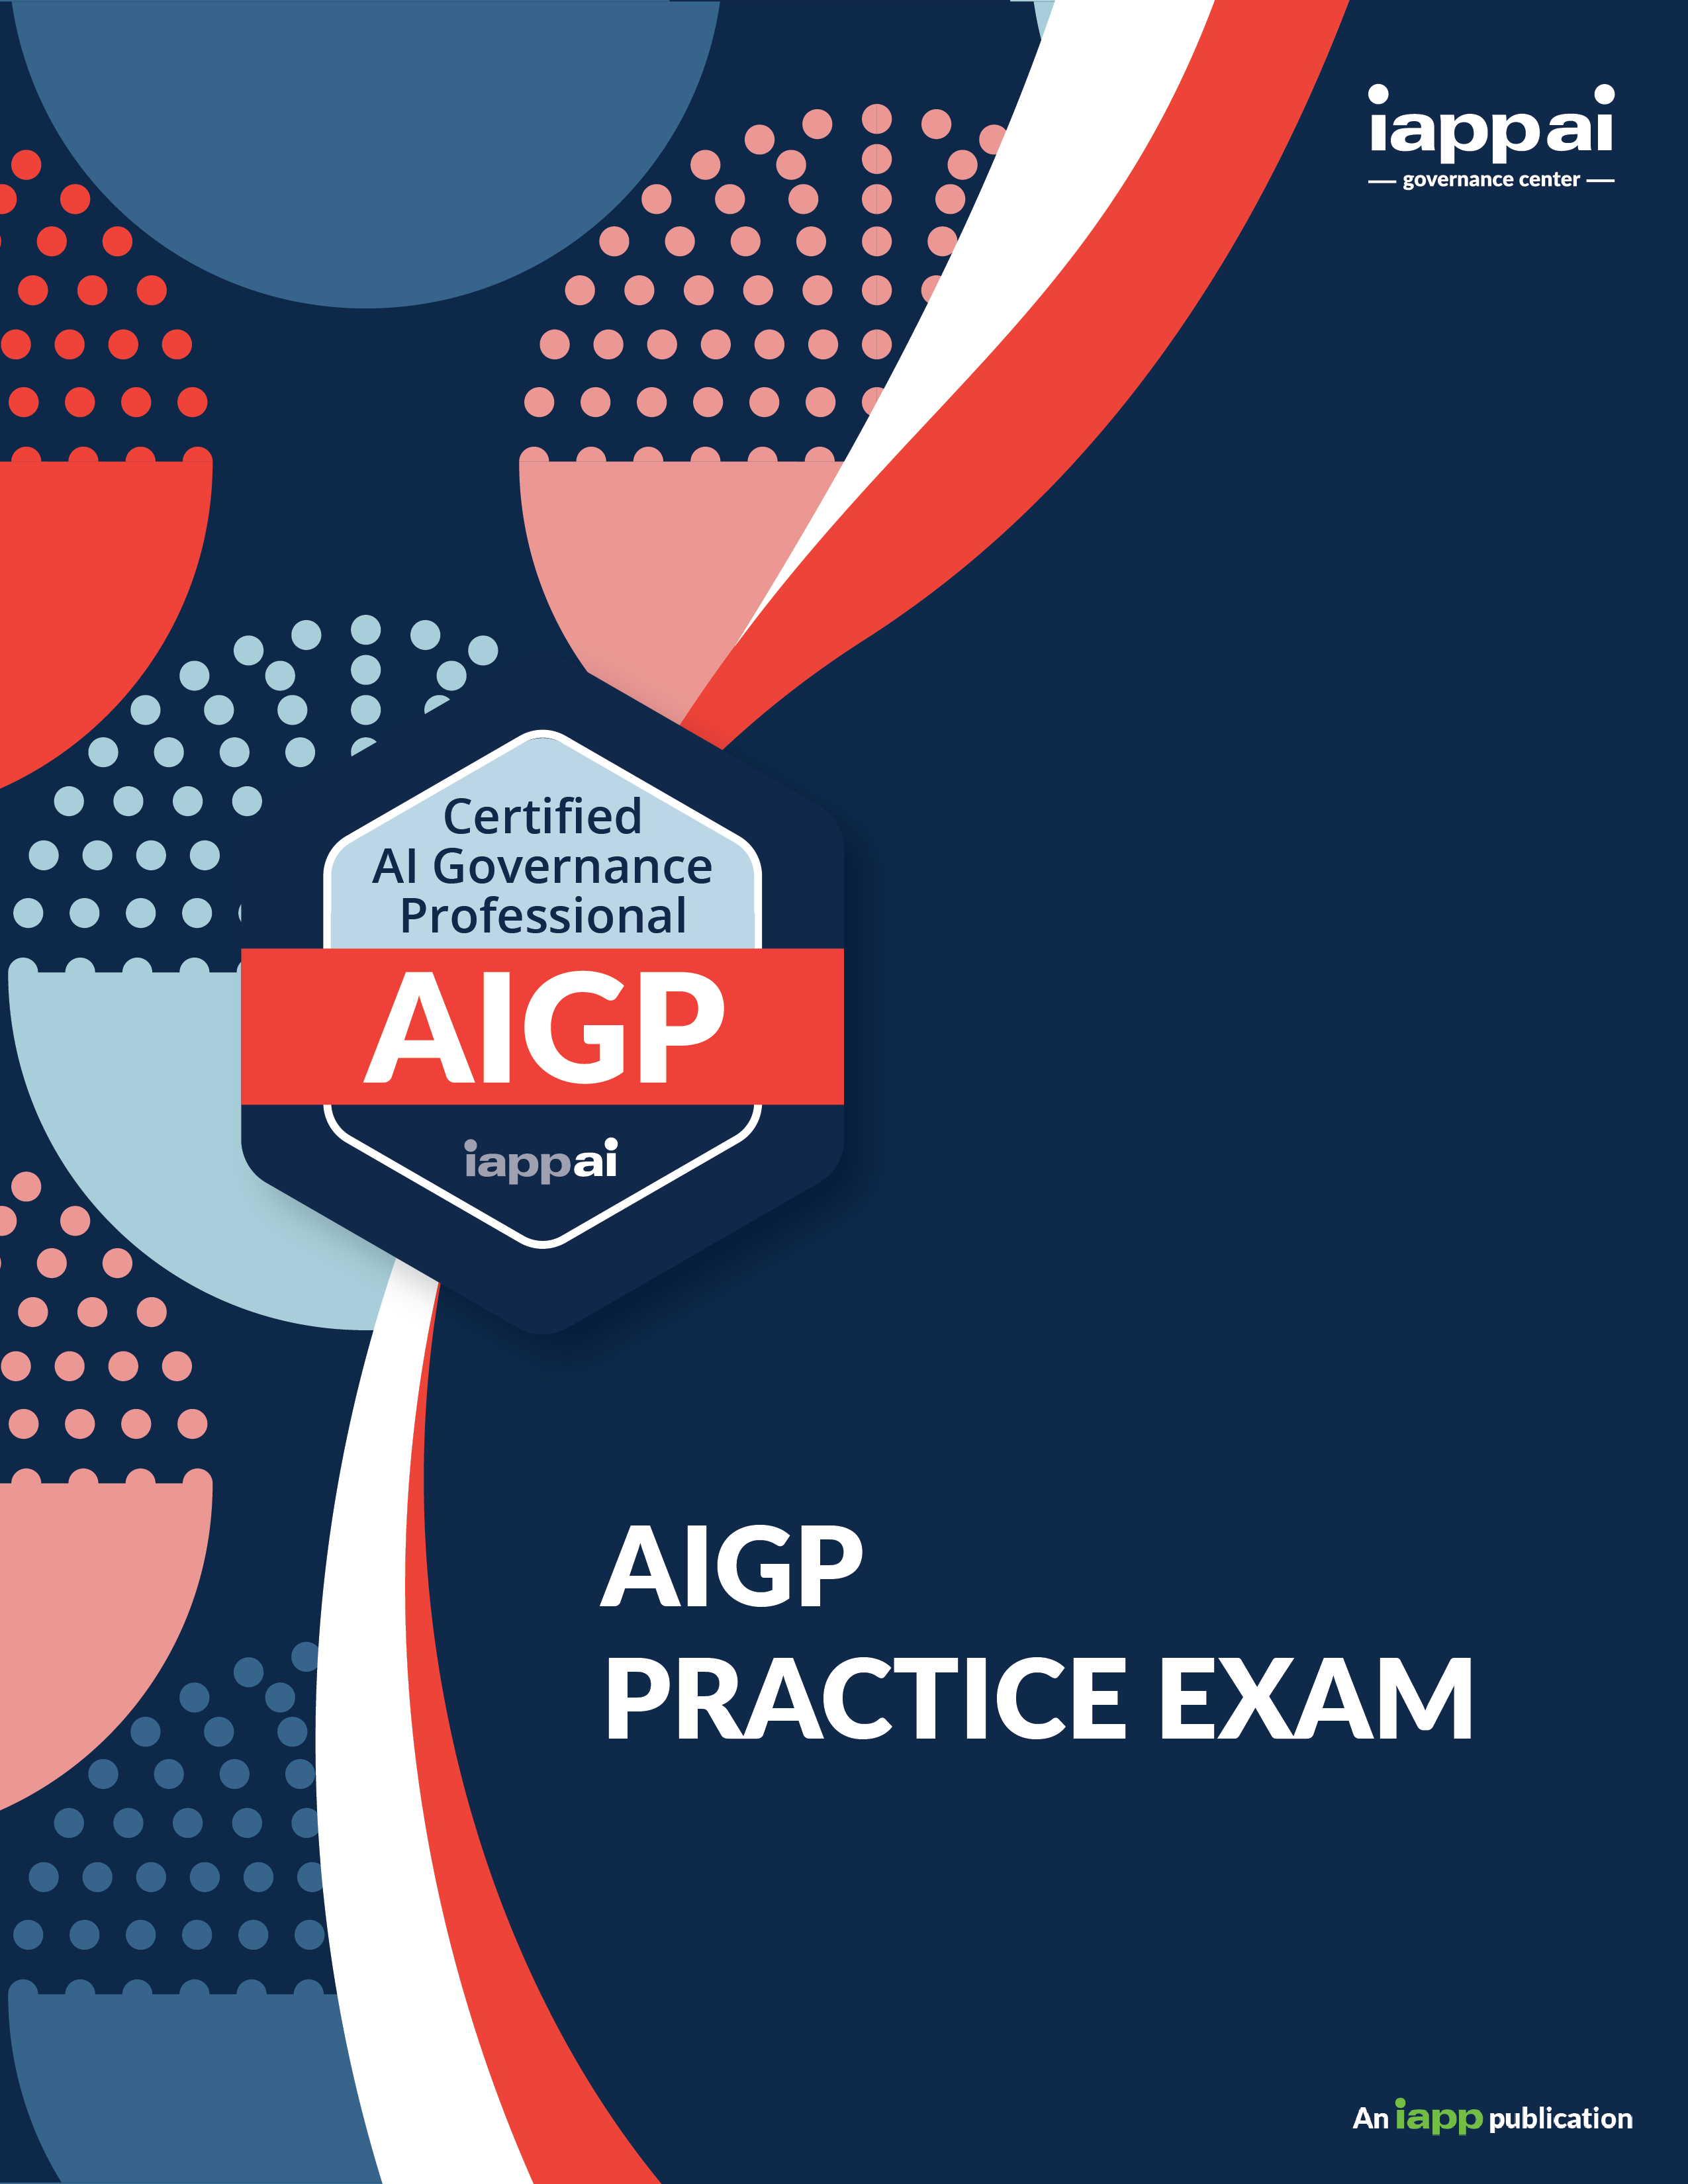 AIGP practice exam